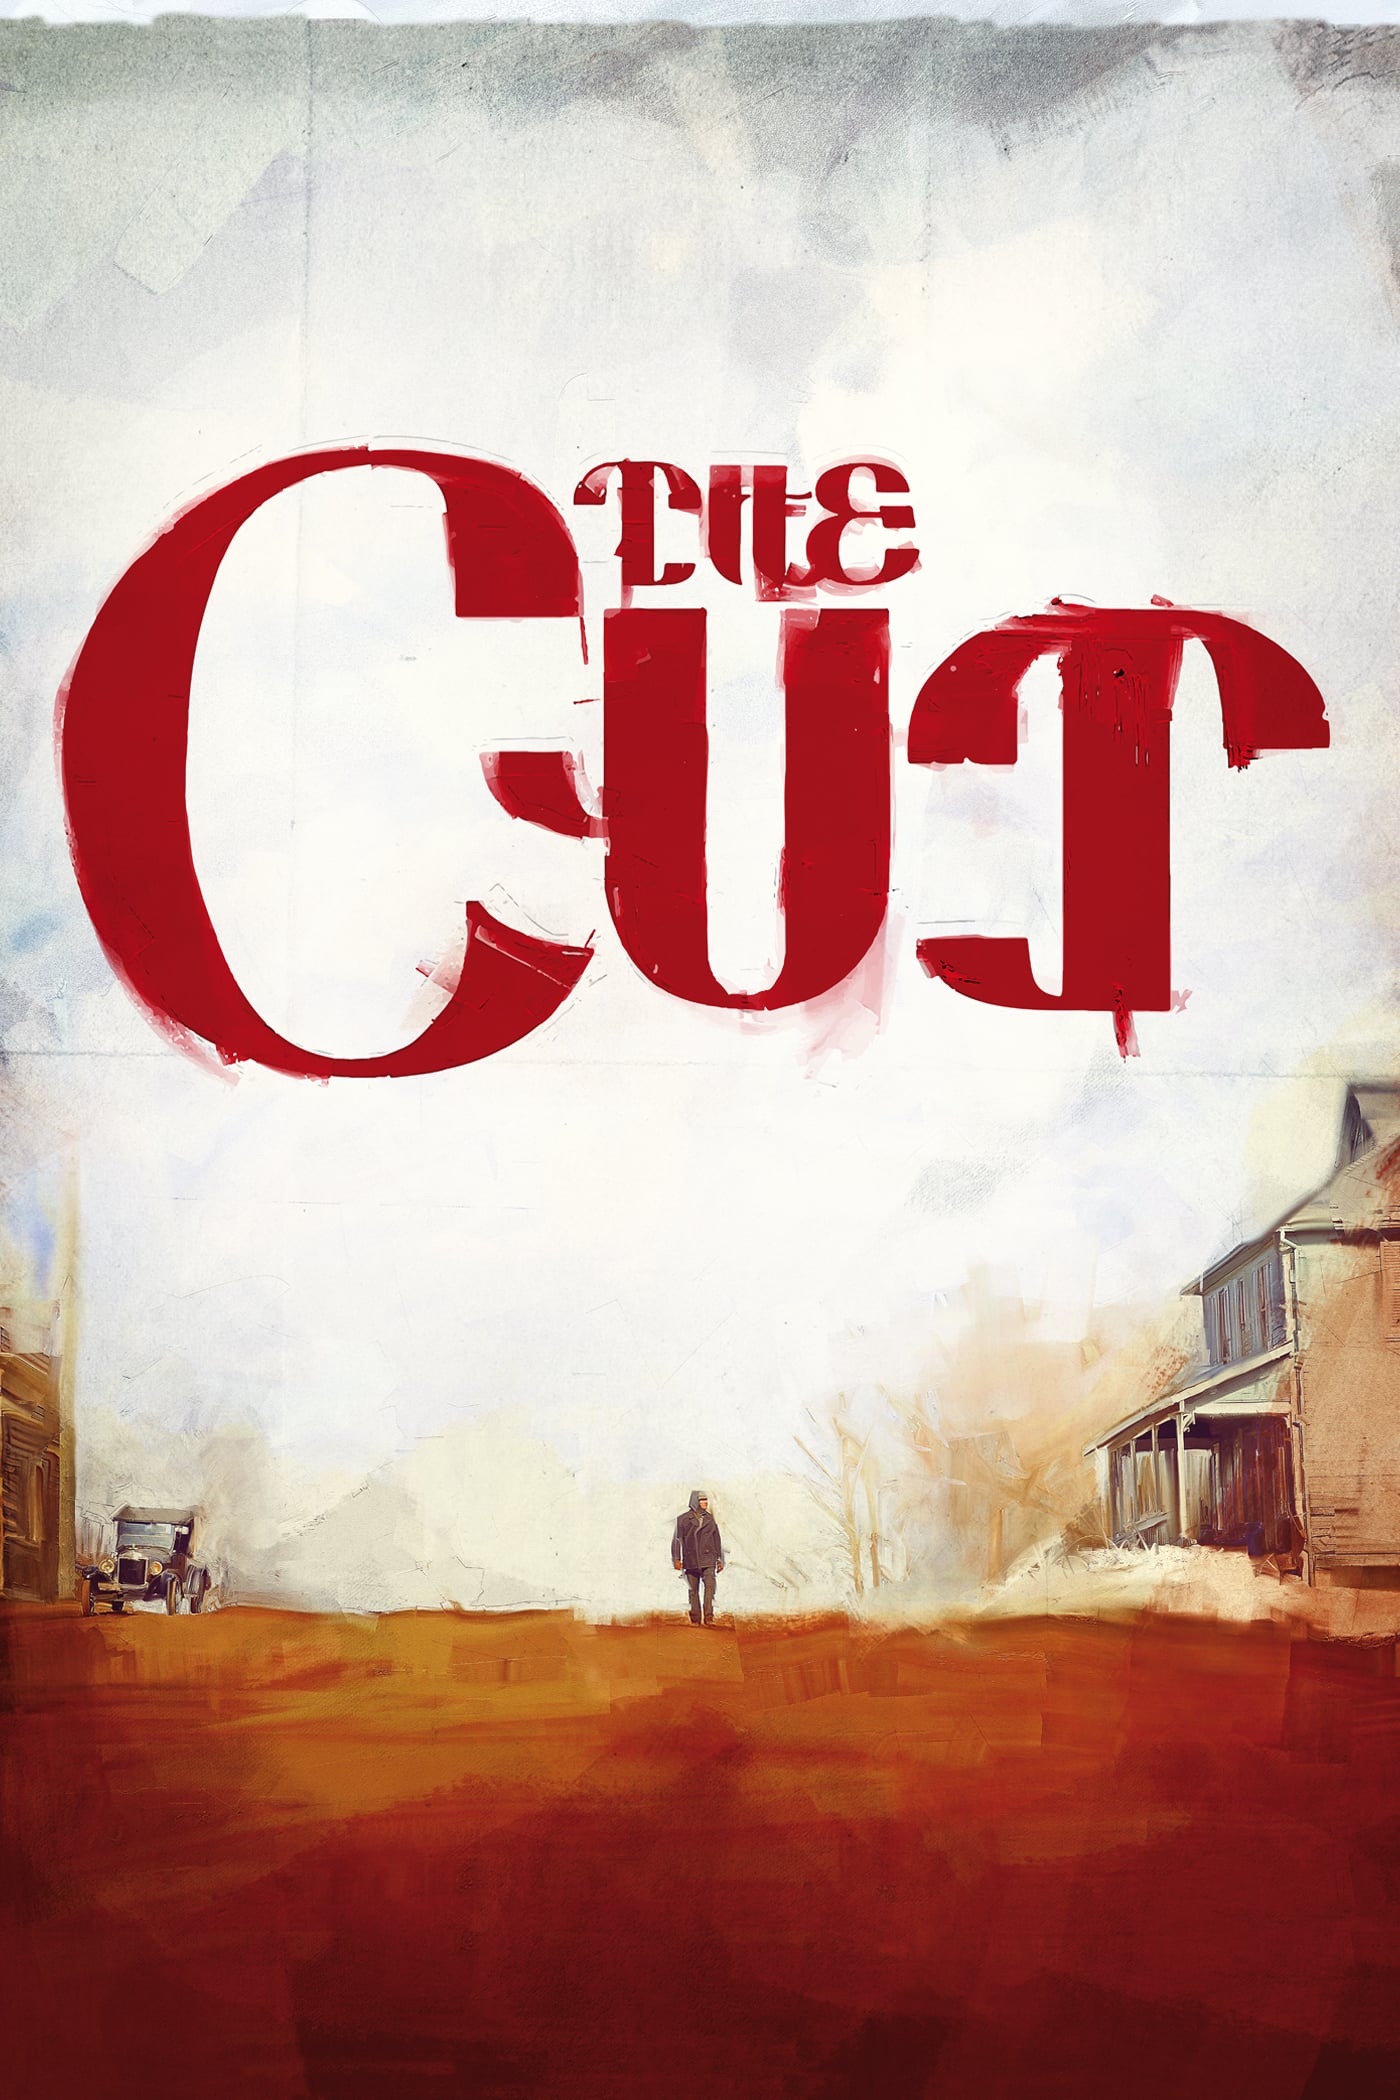 Plakat von "The Cut"